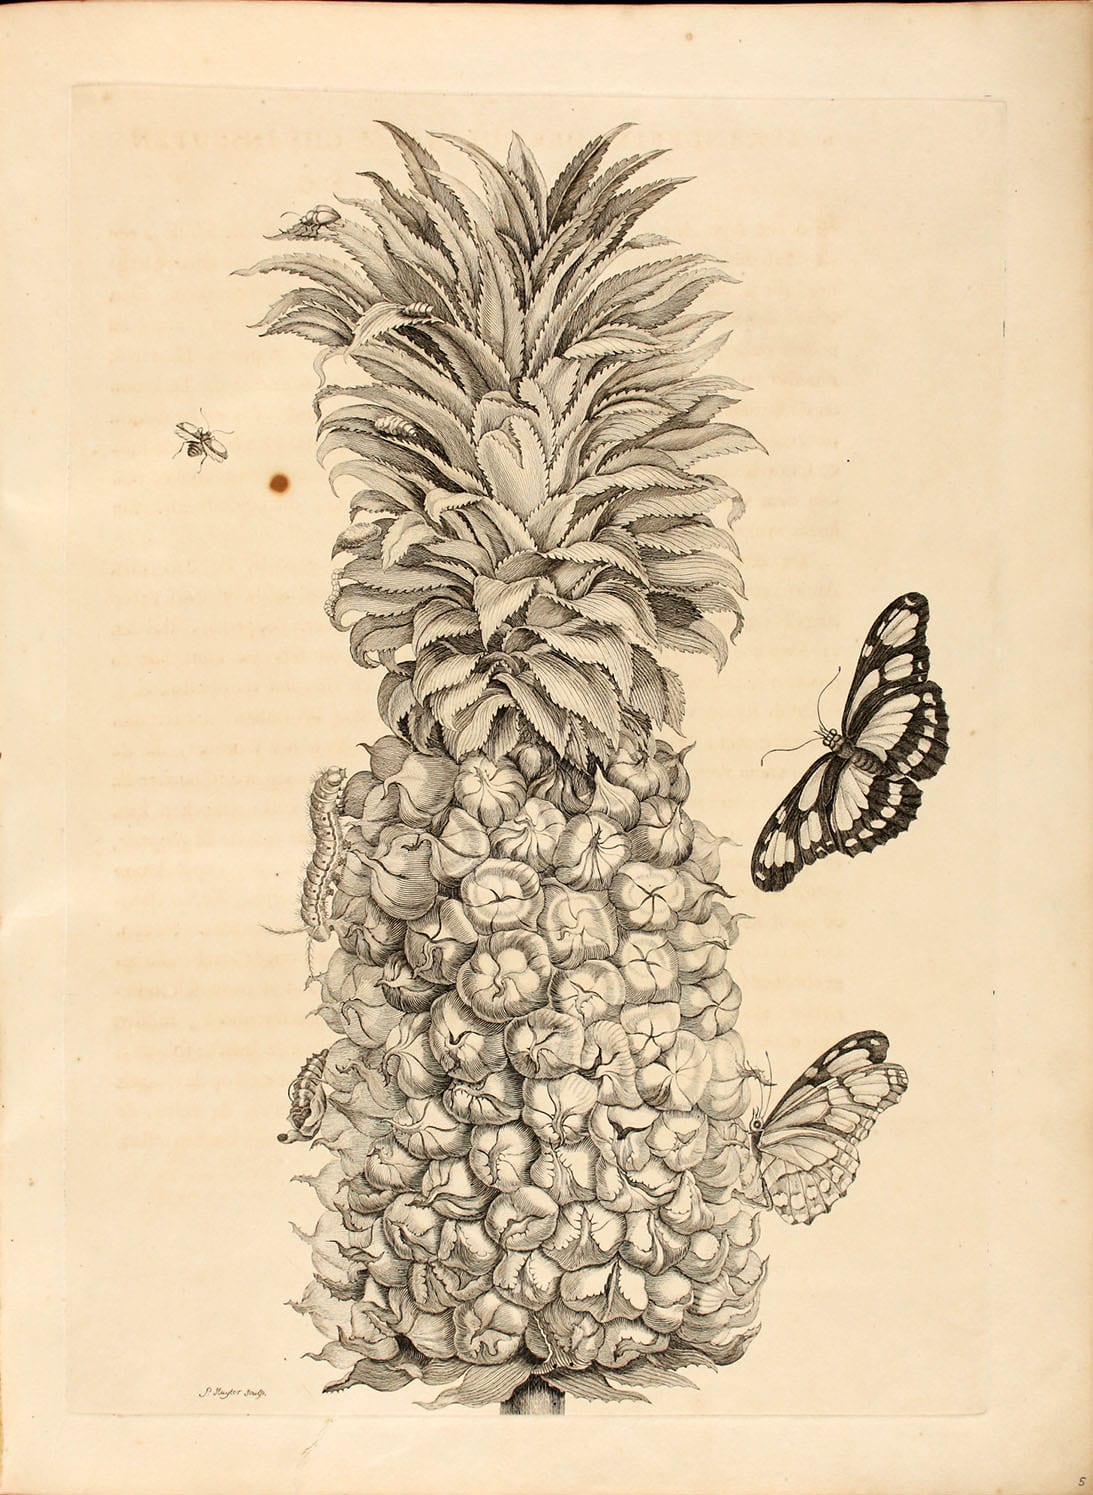 Maria Sibylla Merian: Metamorphosis insectorum Surinamensium ofte verandering der Surinaamsche insecten, Abbildung 2 "Ananas (Ananas comosus)"